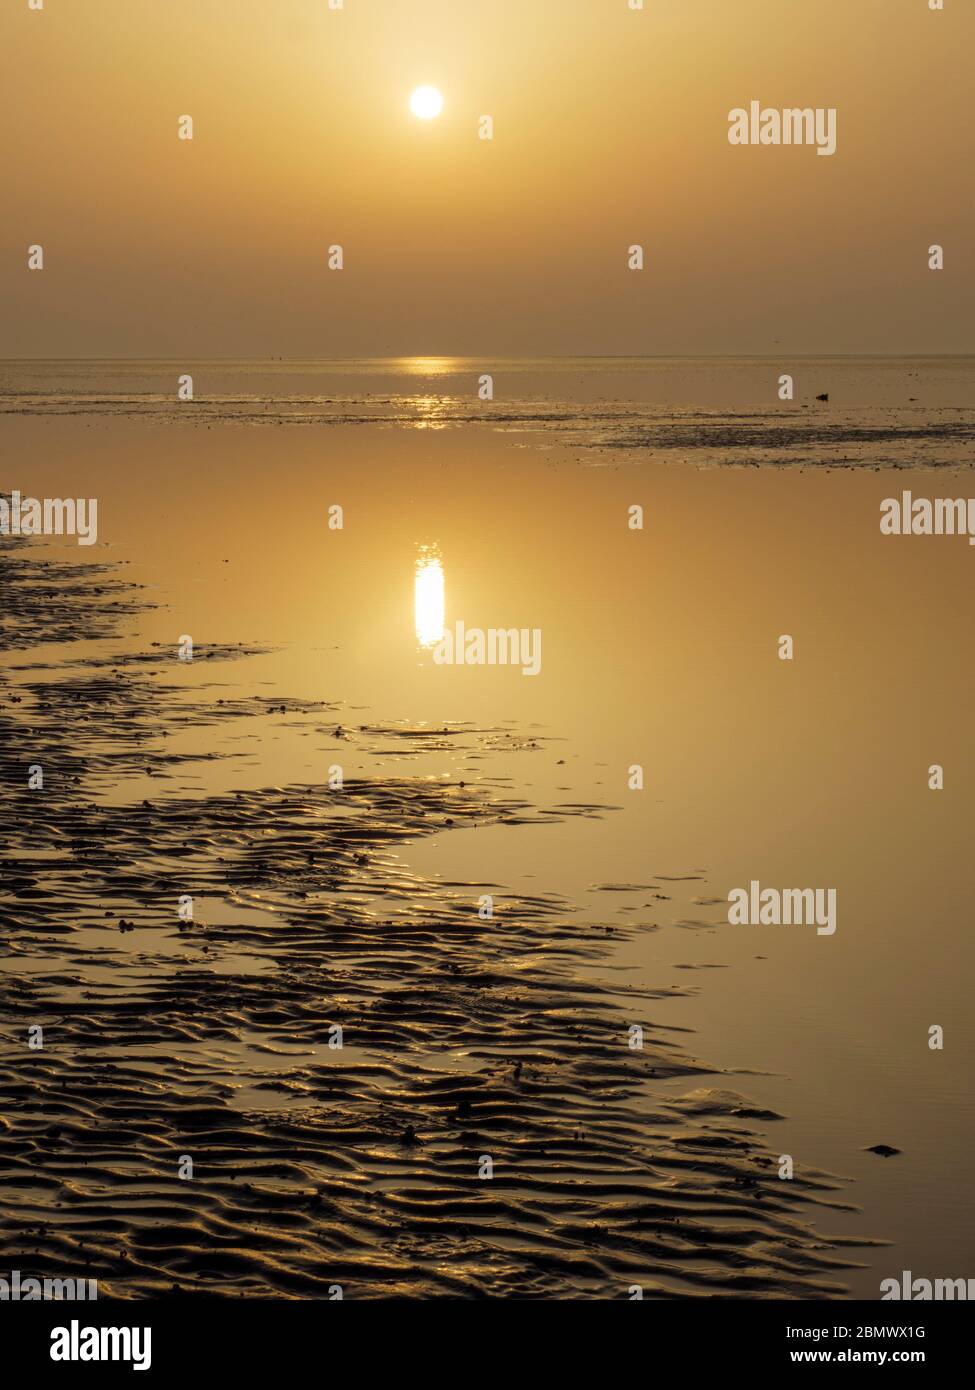 Wattenmeer bei Cuxhaven, Nationalpark Wattenmeer, Sonnenuntergang, UNESCO Weltnaturerbe, Niedersachsen, Deutschland Stock Photo